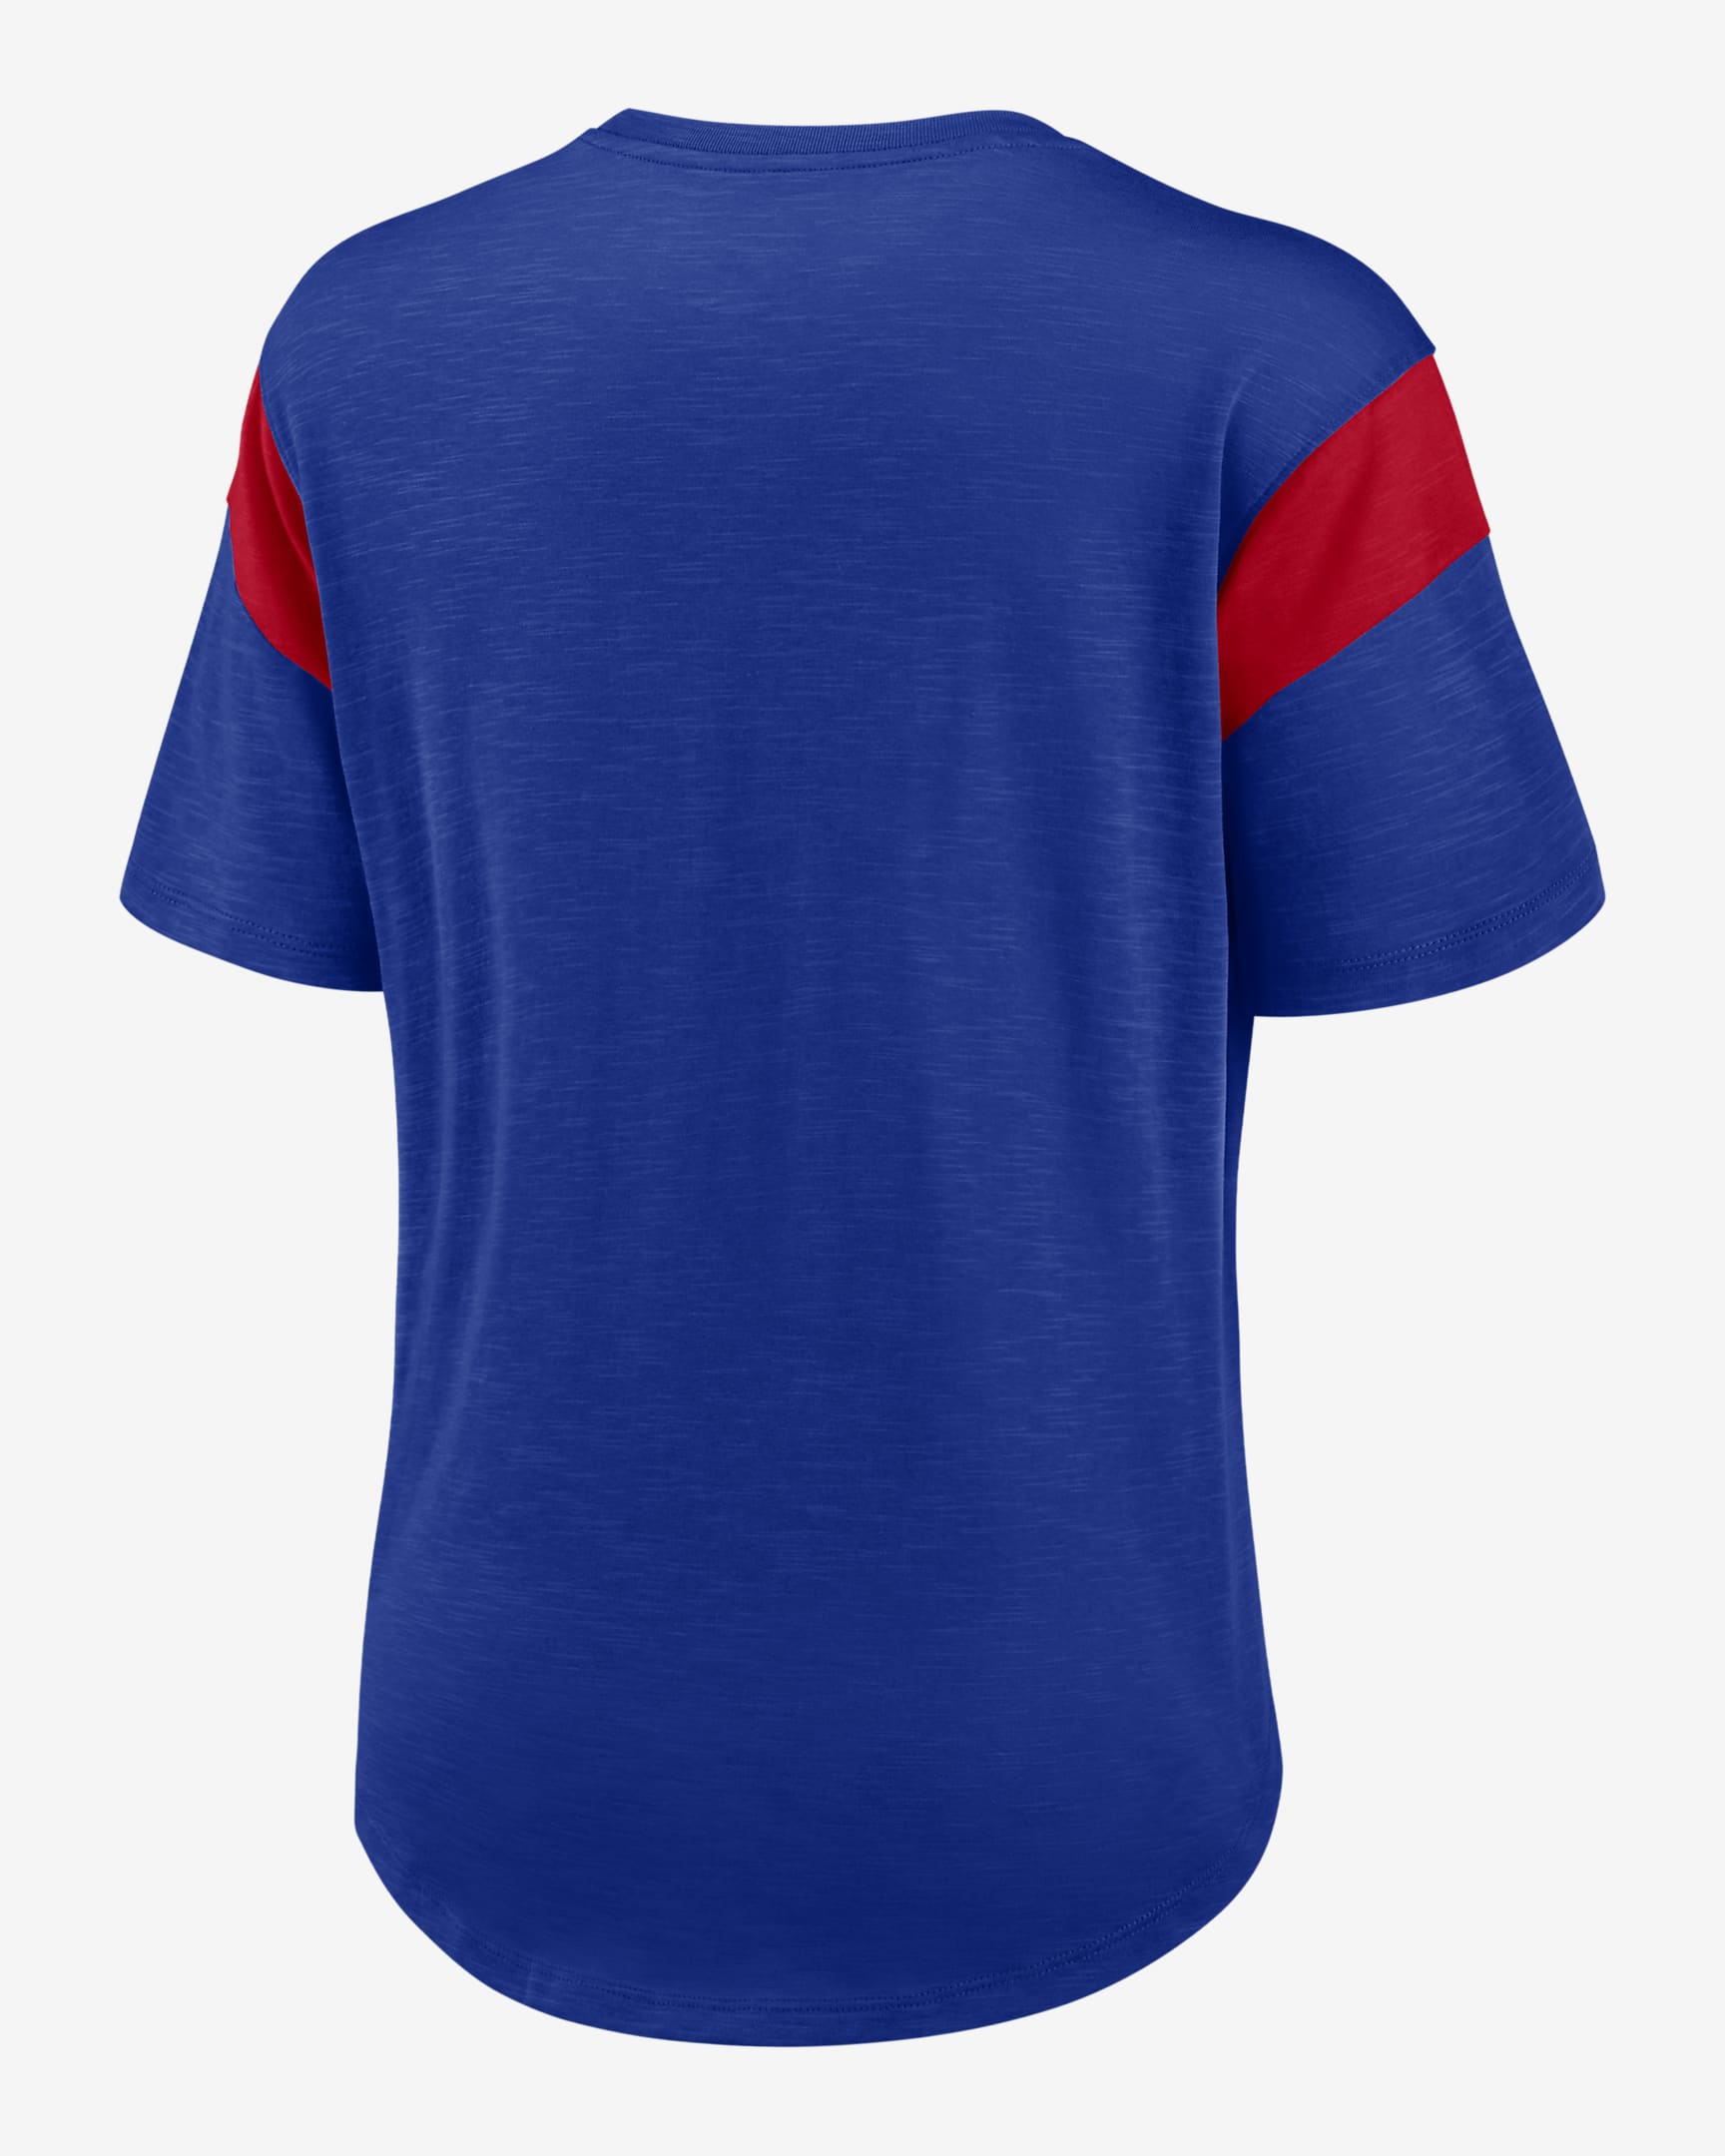 Nike Fashion Prime Logo (NFL Buffalo Bills) Women's T-Shirt. Nike.com